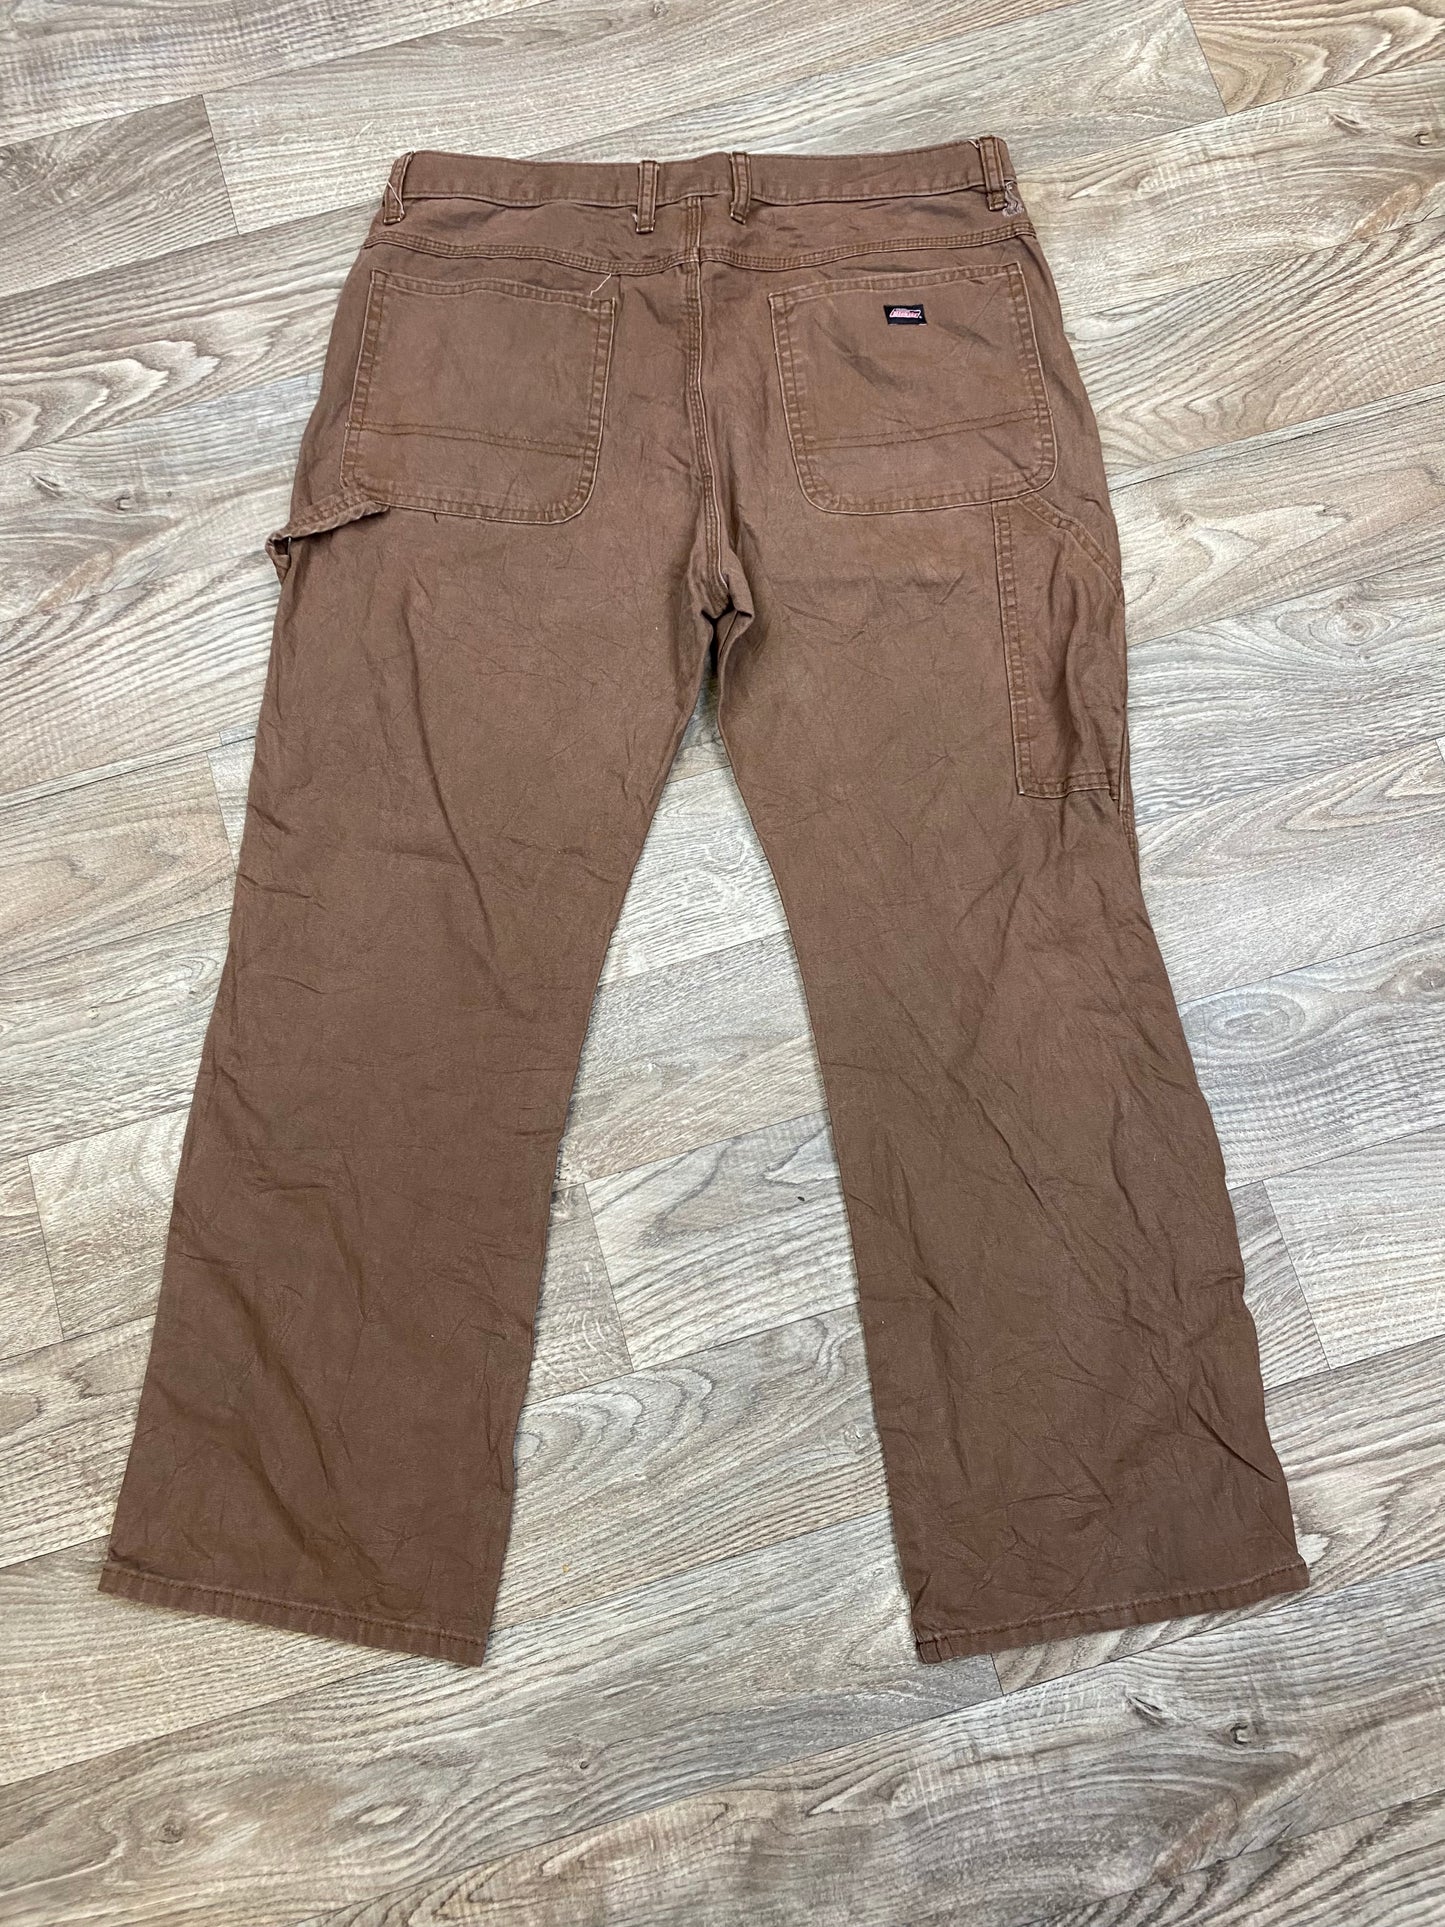 Vintage Dickies 36x30 Carpenter Pants